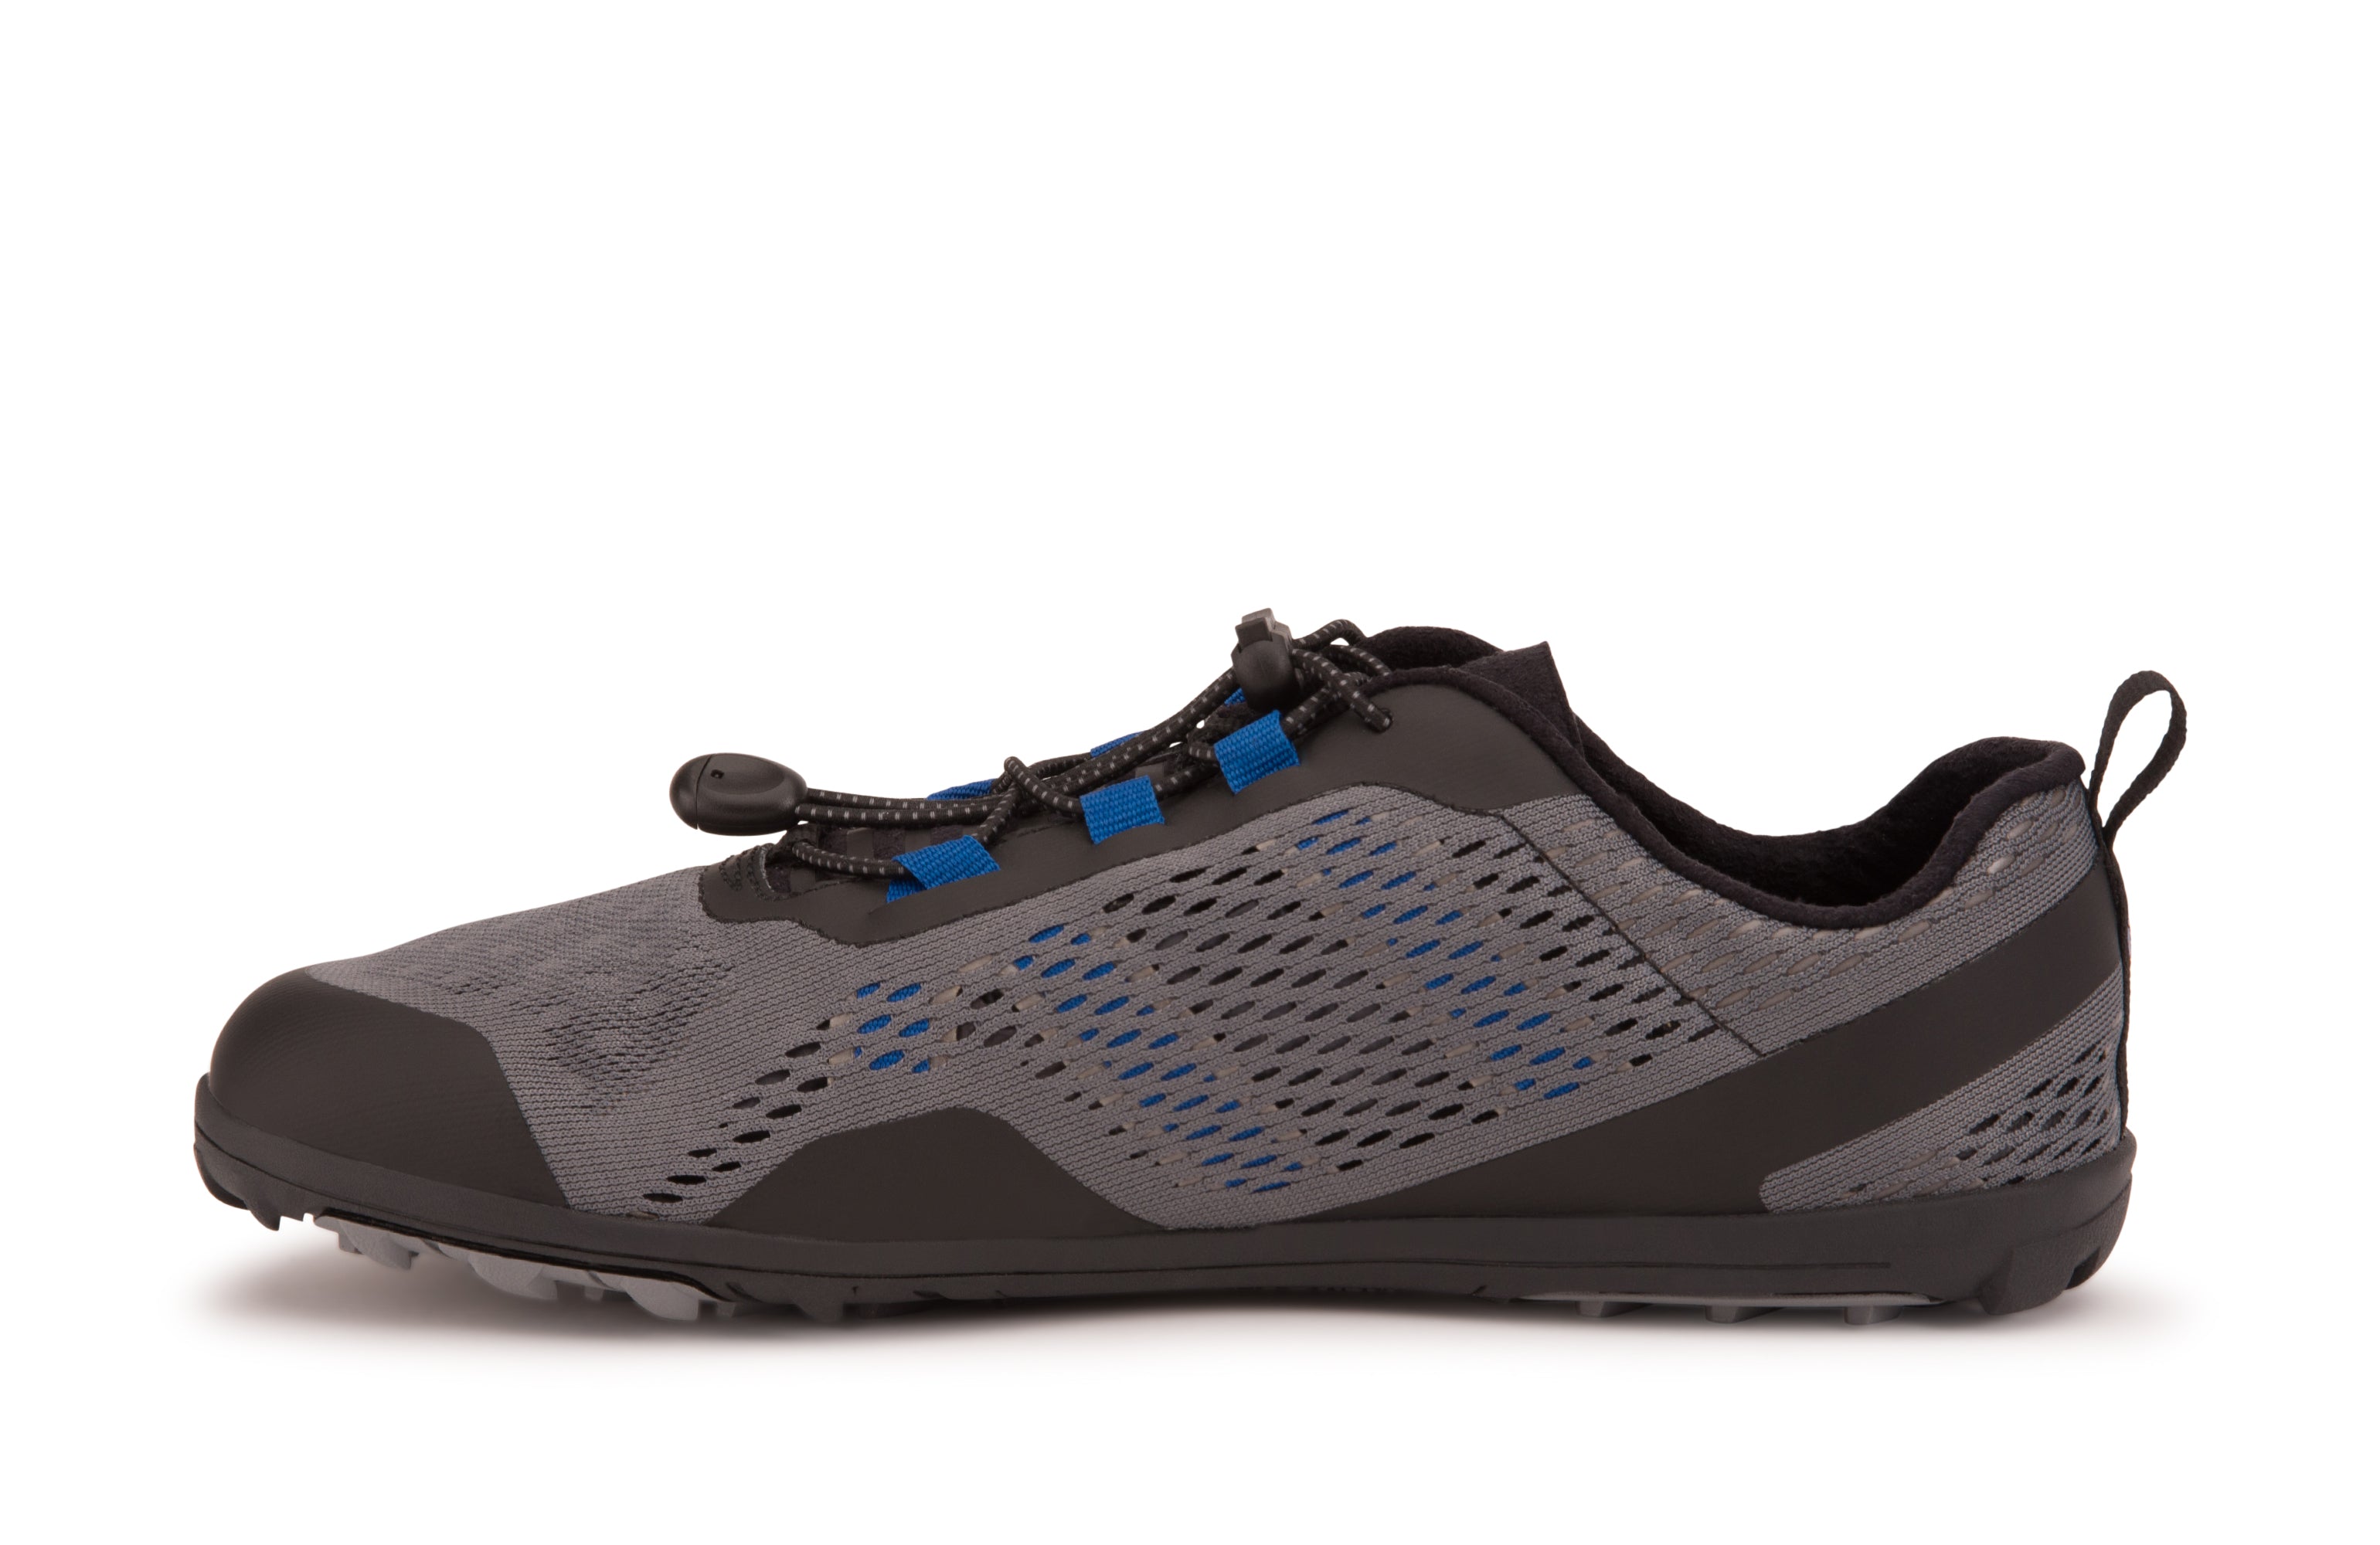 Xero Shoes Aqua X Sport barfods vand træningssko til mænd i farven steel gray / blue, inderside